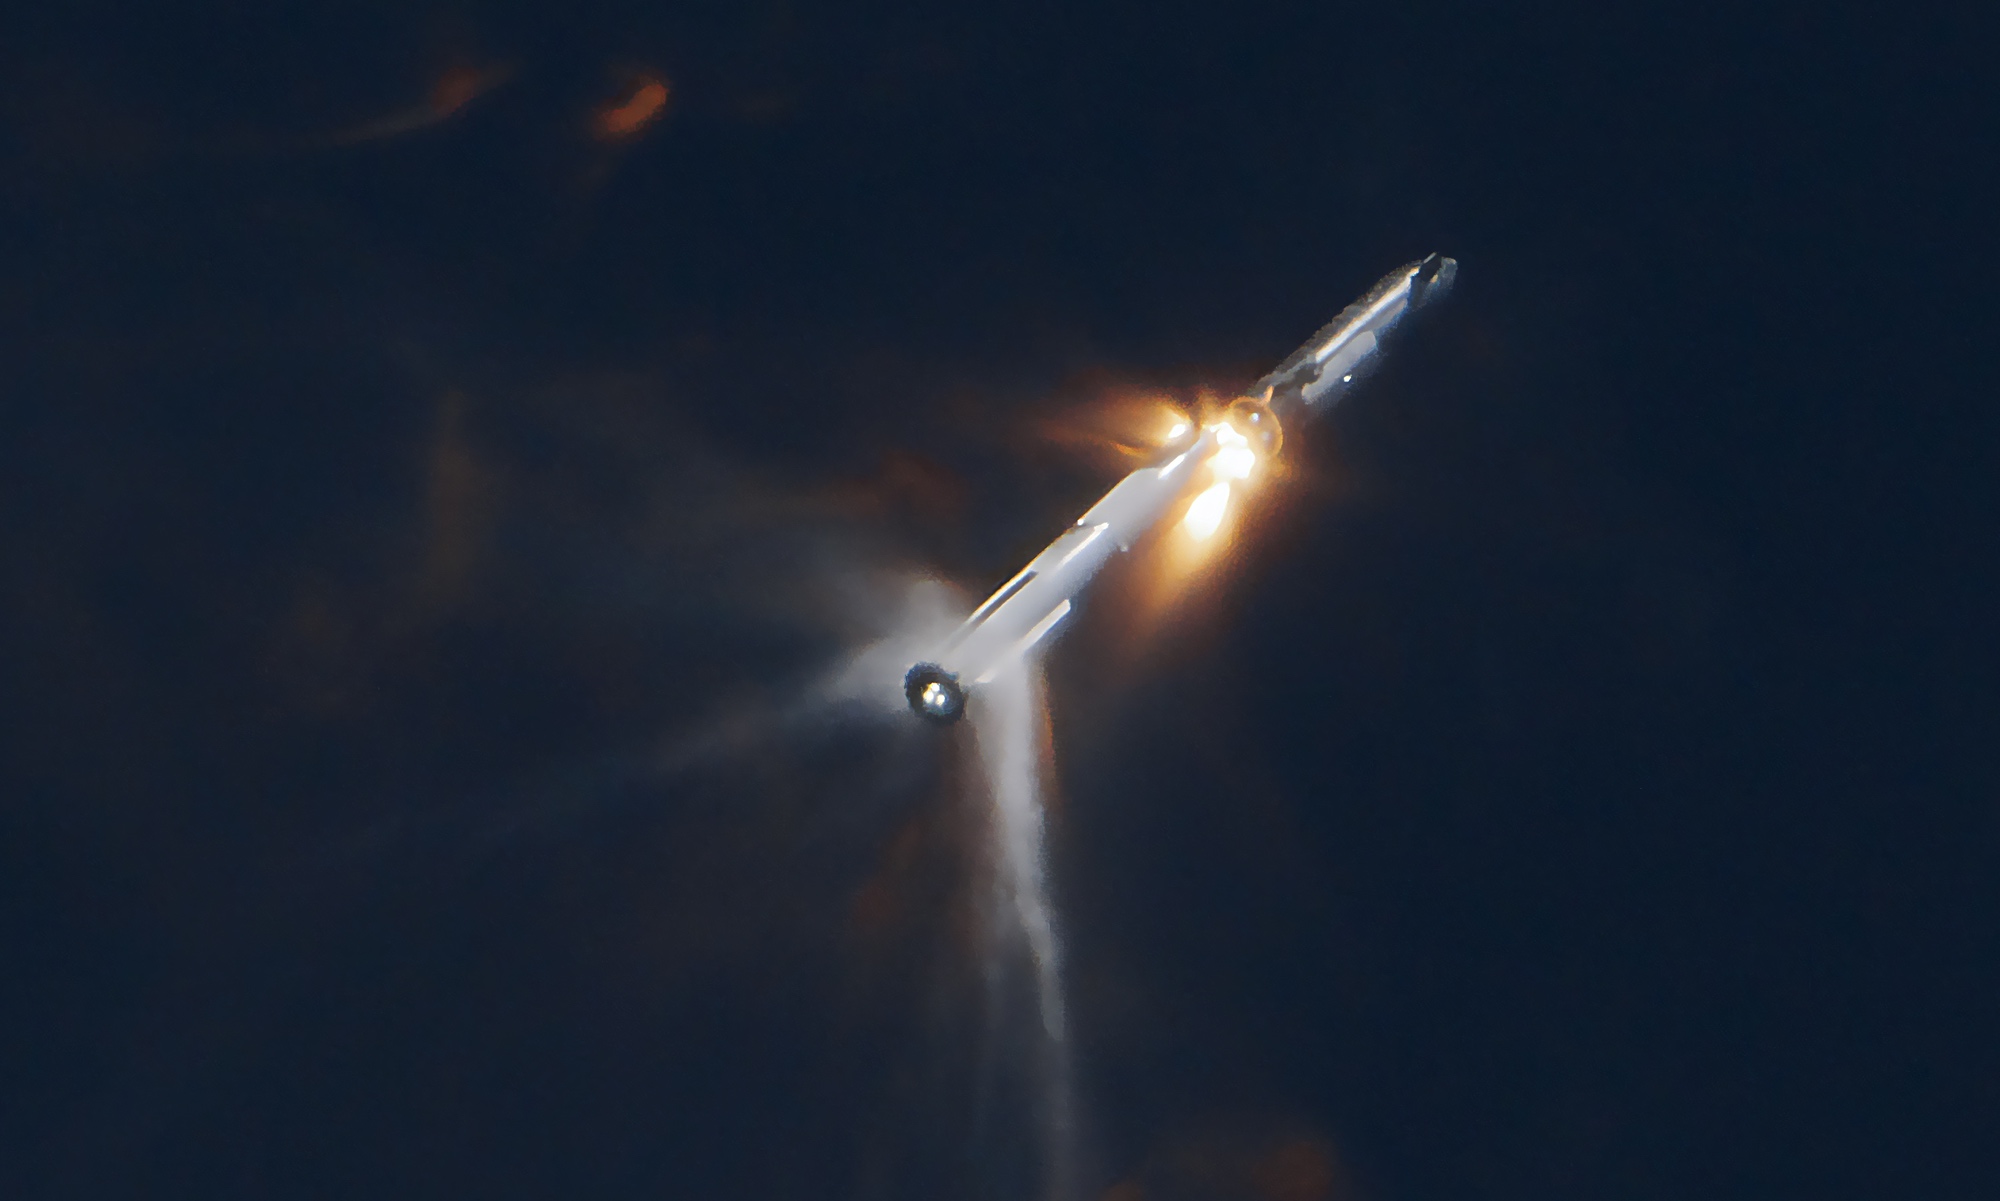 تقول شركة SpaceX إن تنفيس الوقود الدافع تسبب في فقدان المركبة الفضائية الثانية